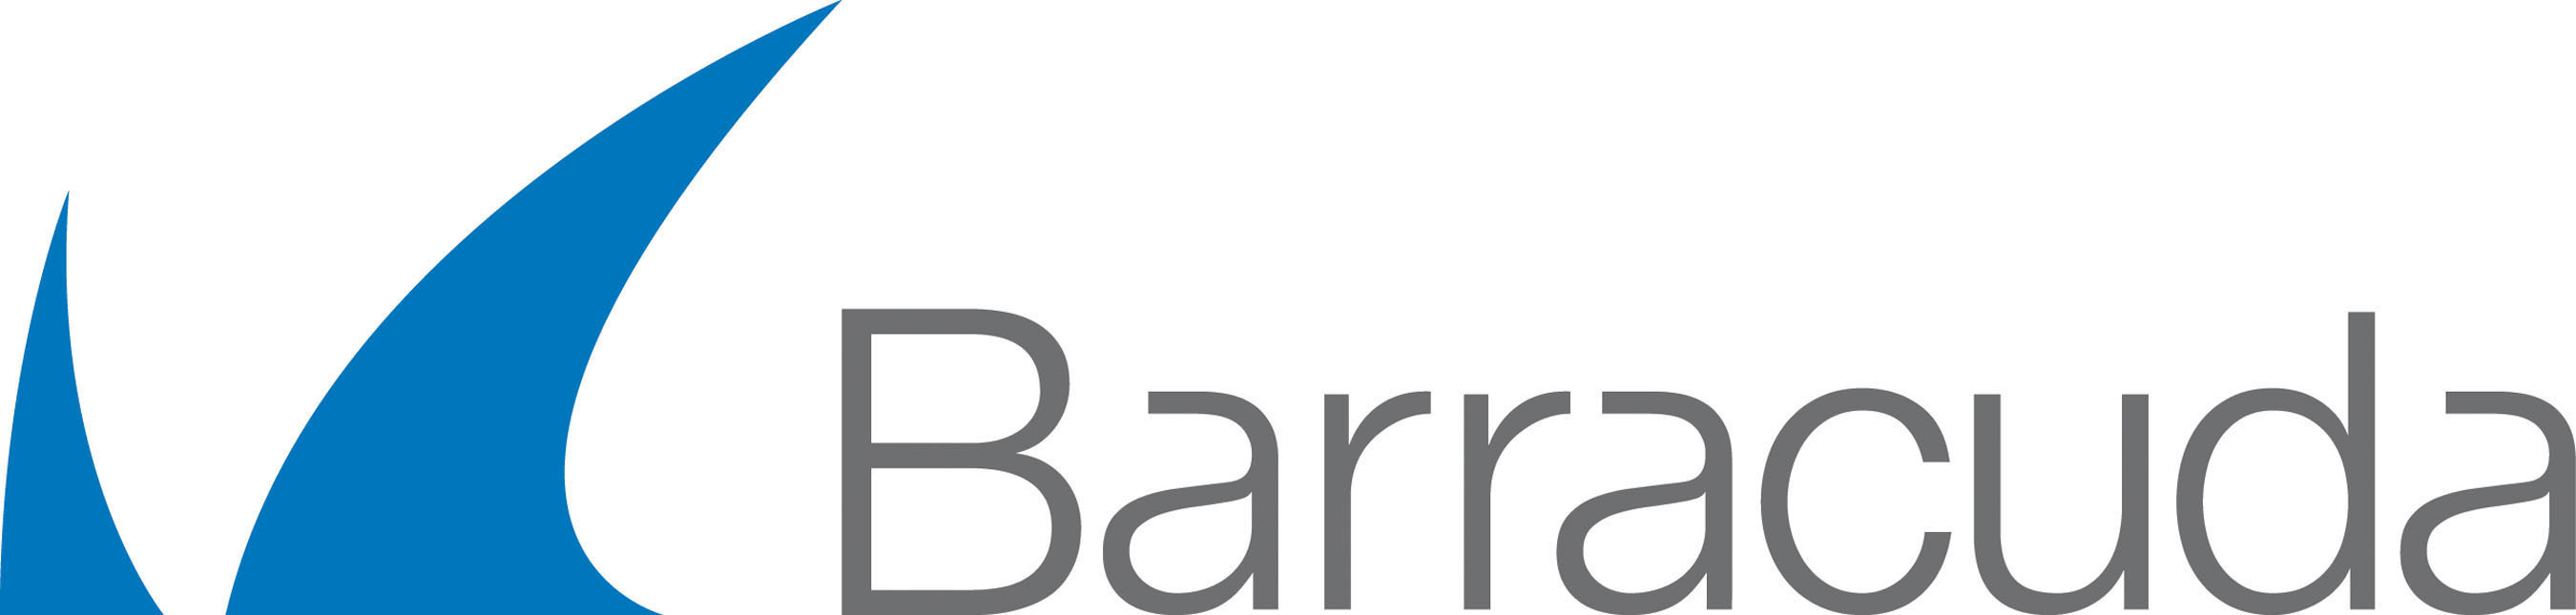 Barracuda Barracloudgen Firewall F900.CCC